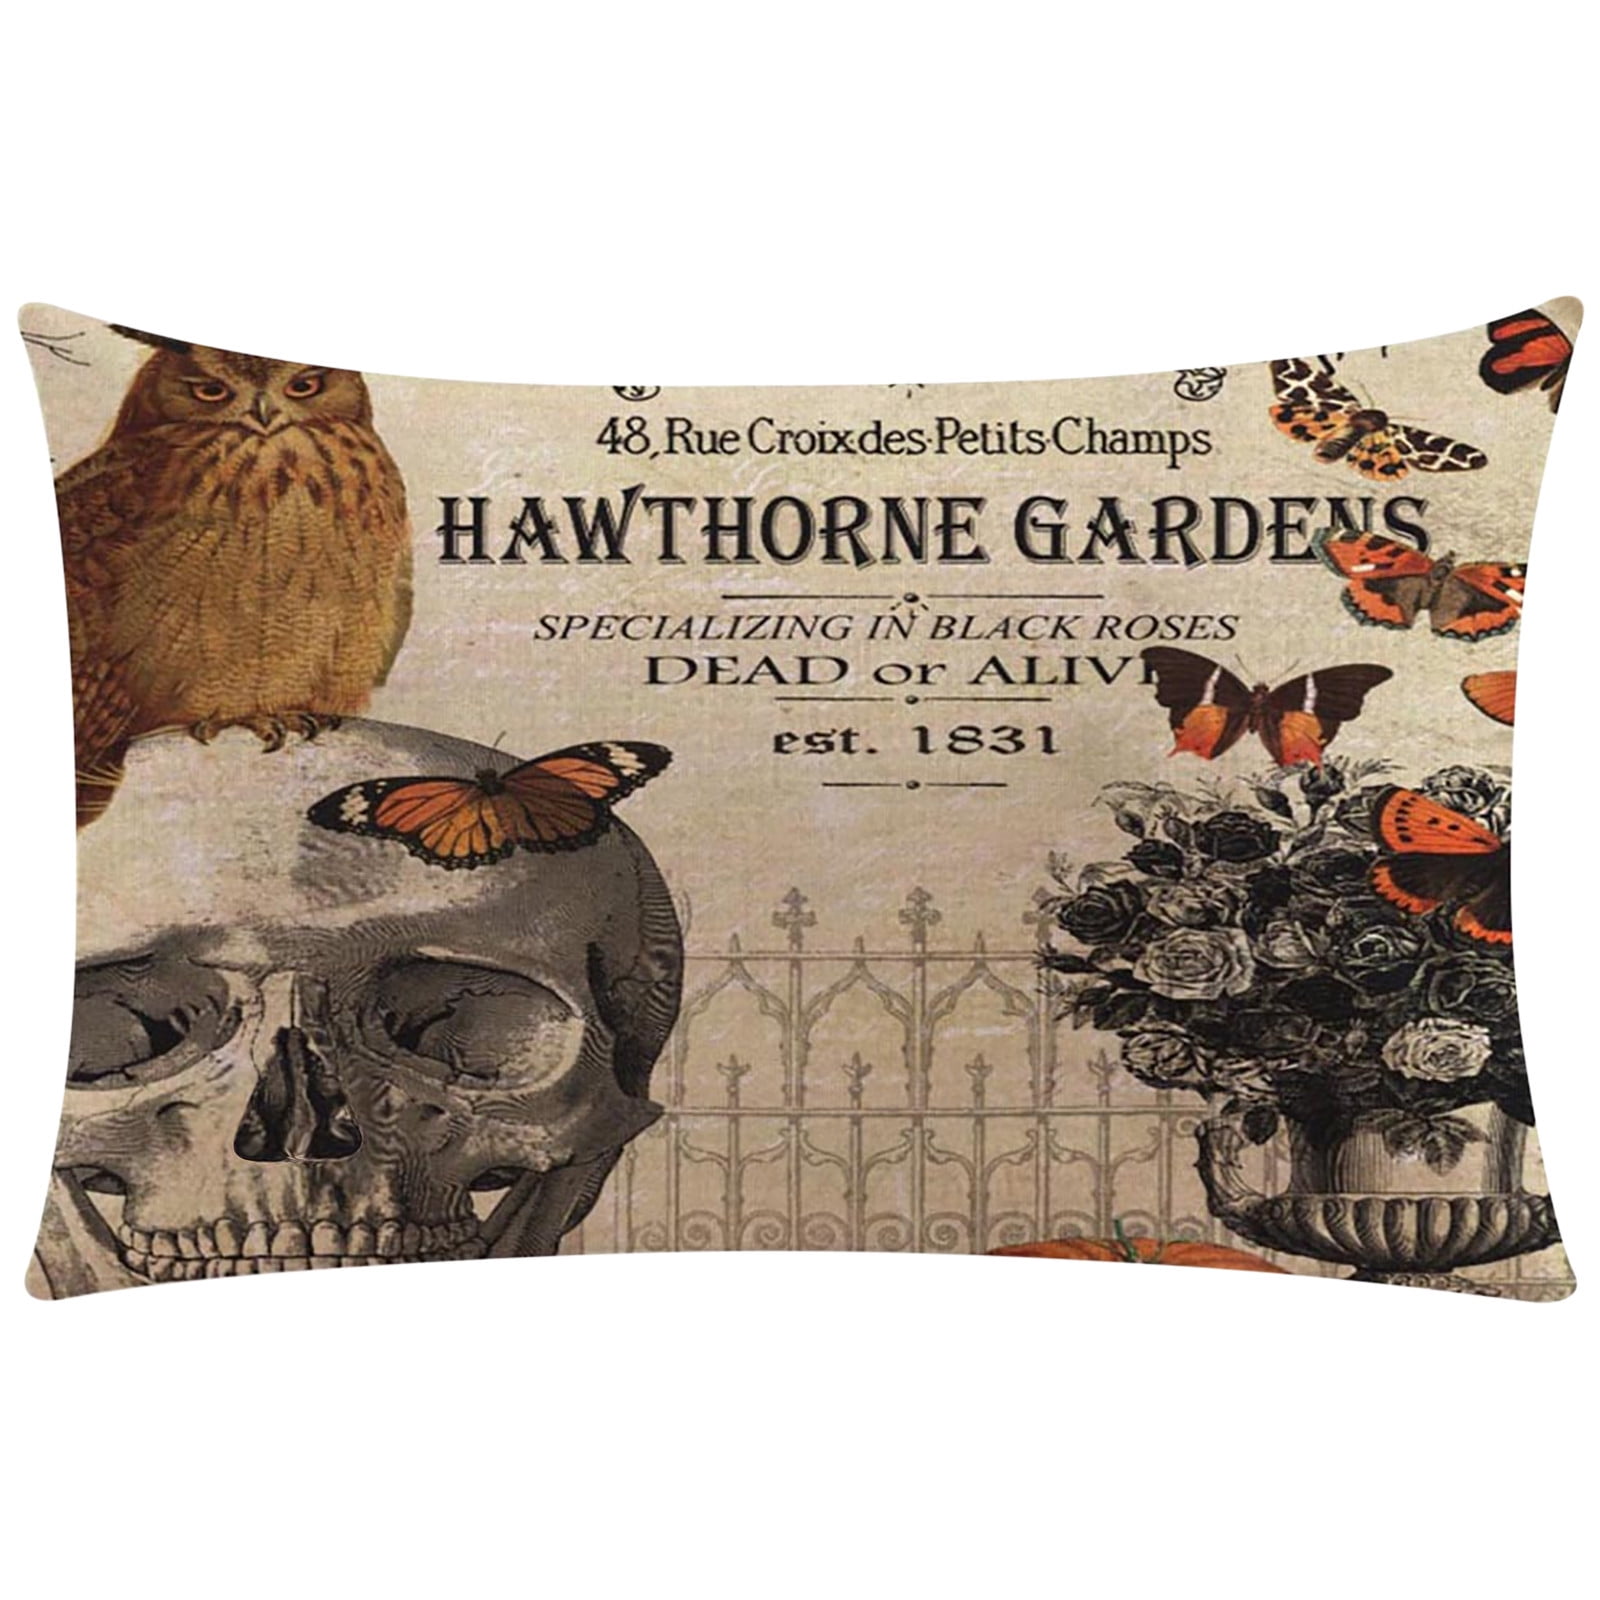 Hawthorne Gardens Linen Halloween Cushion Cover Pillow Case Sofa Home Decor 18" 